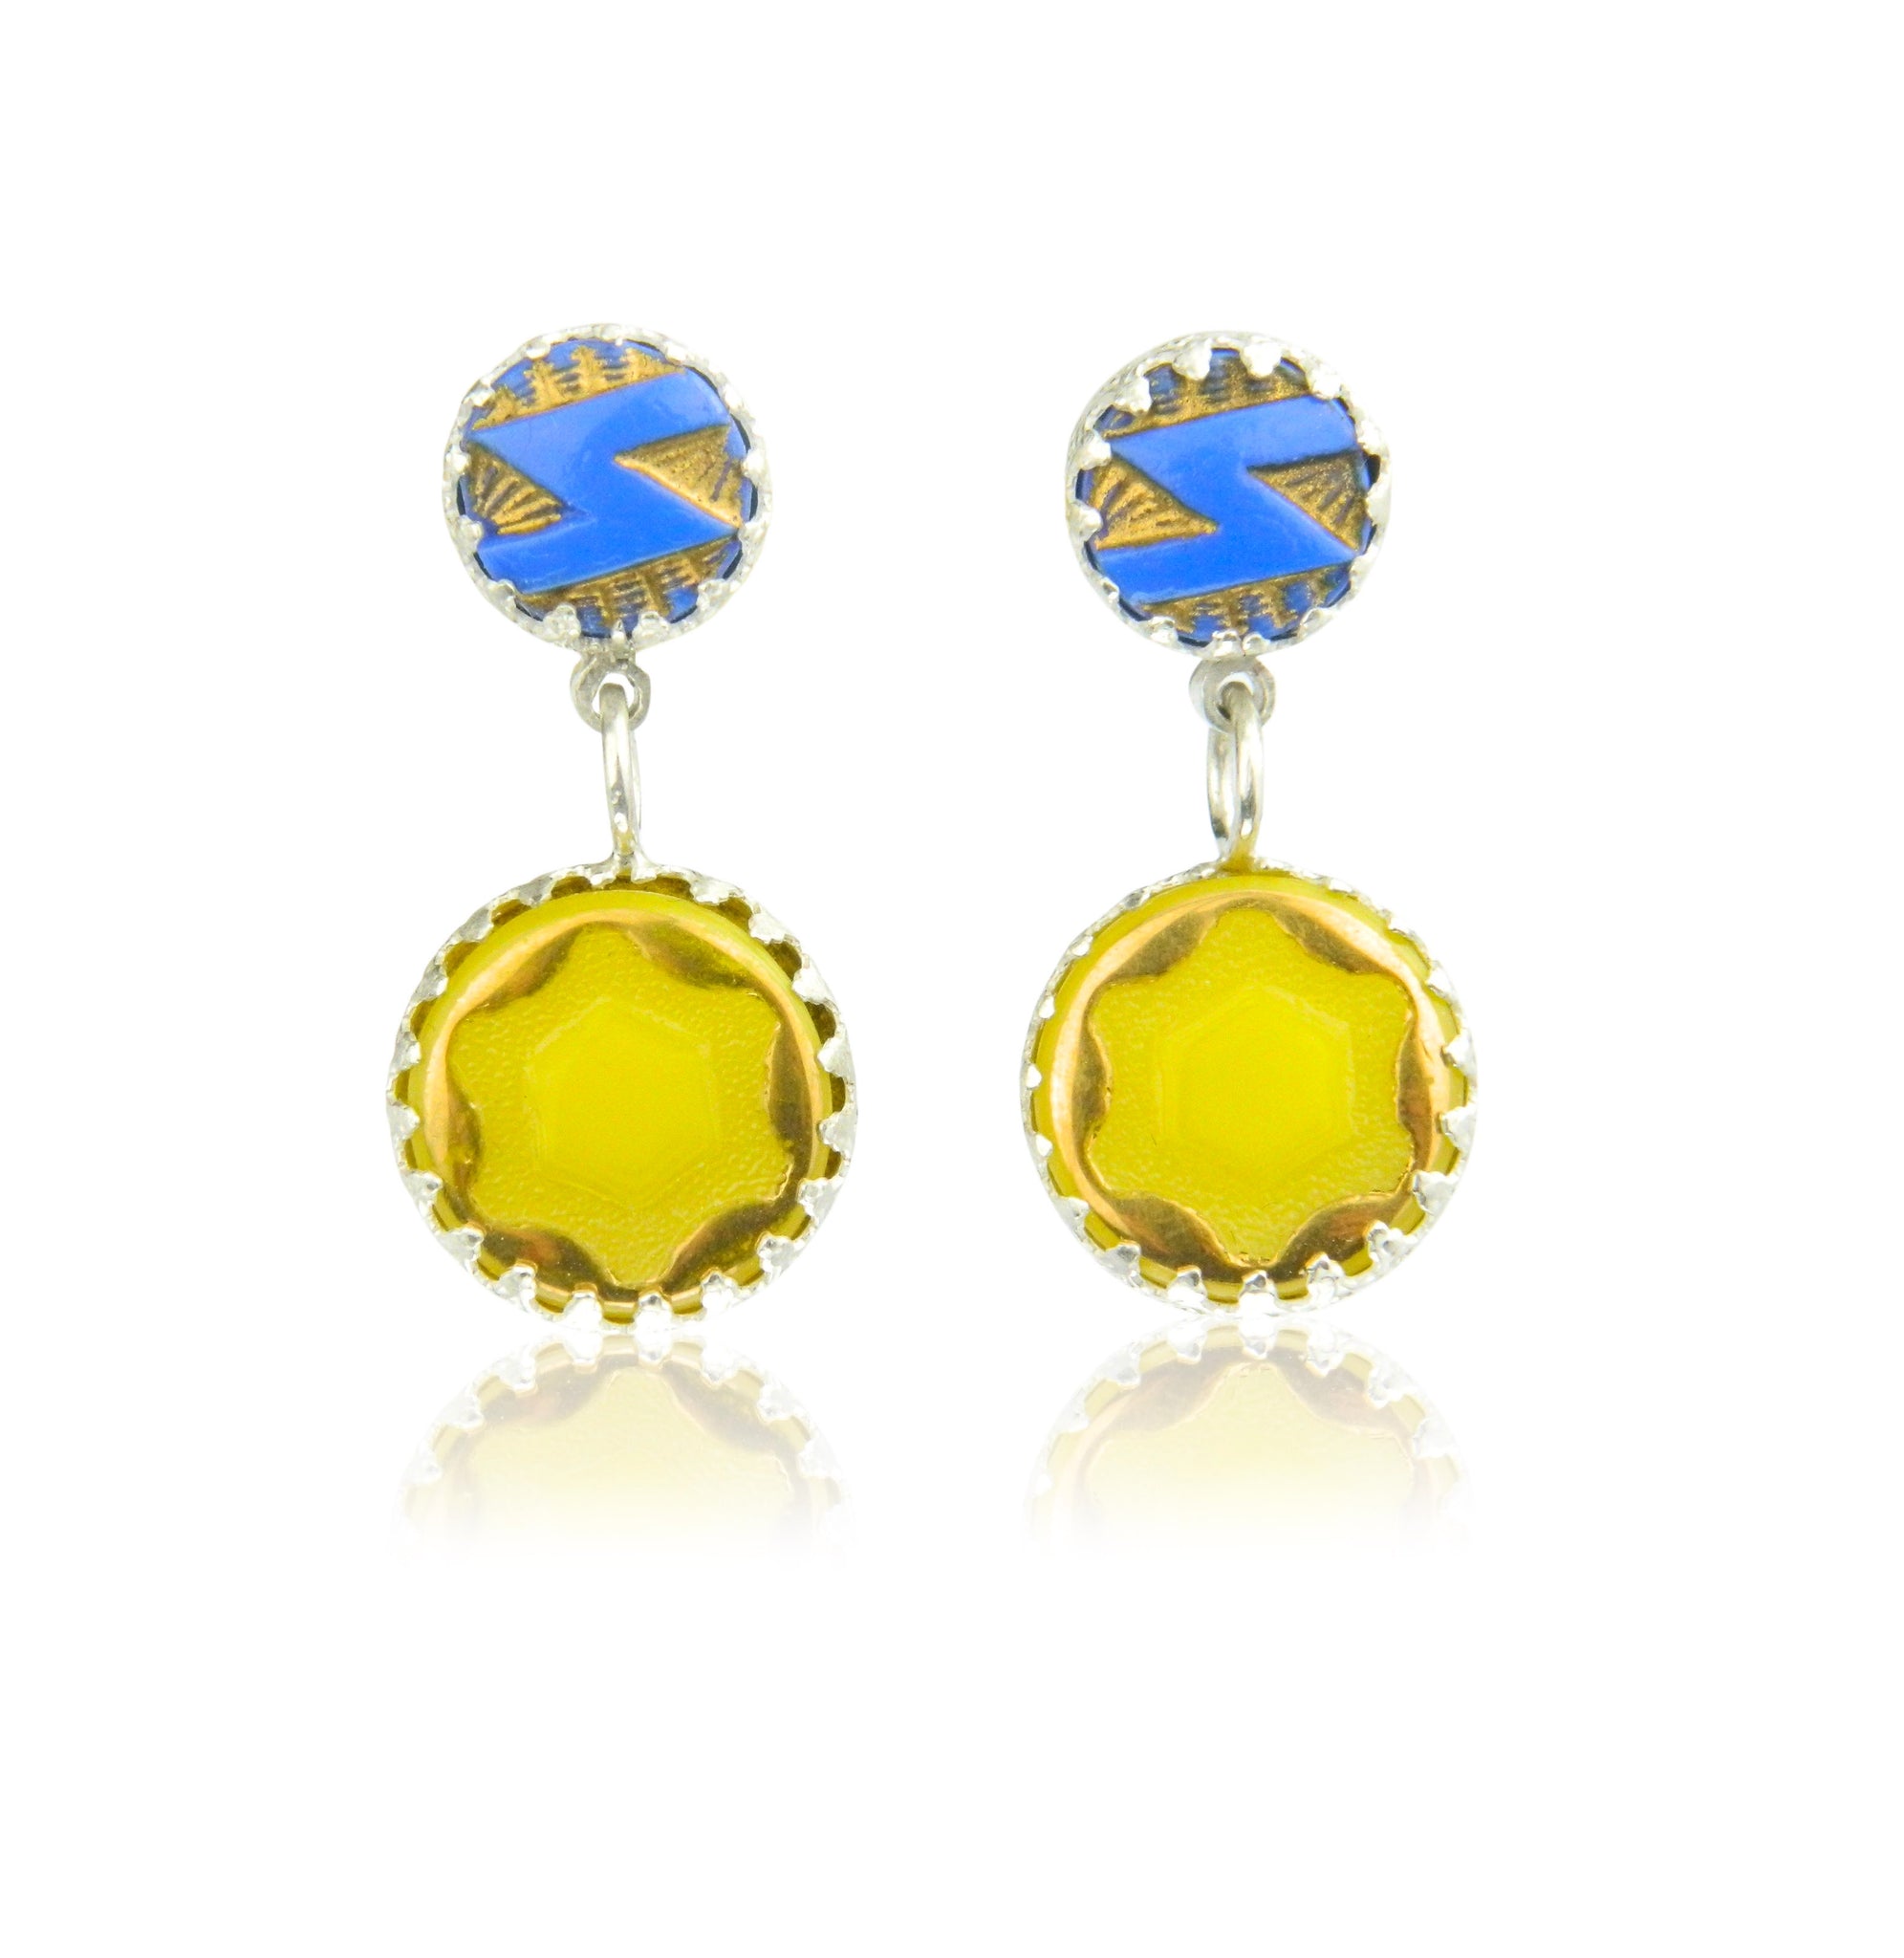 Double drop yellow star earrings